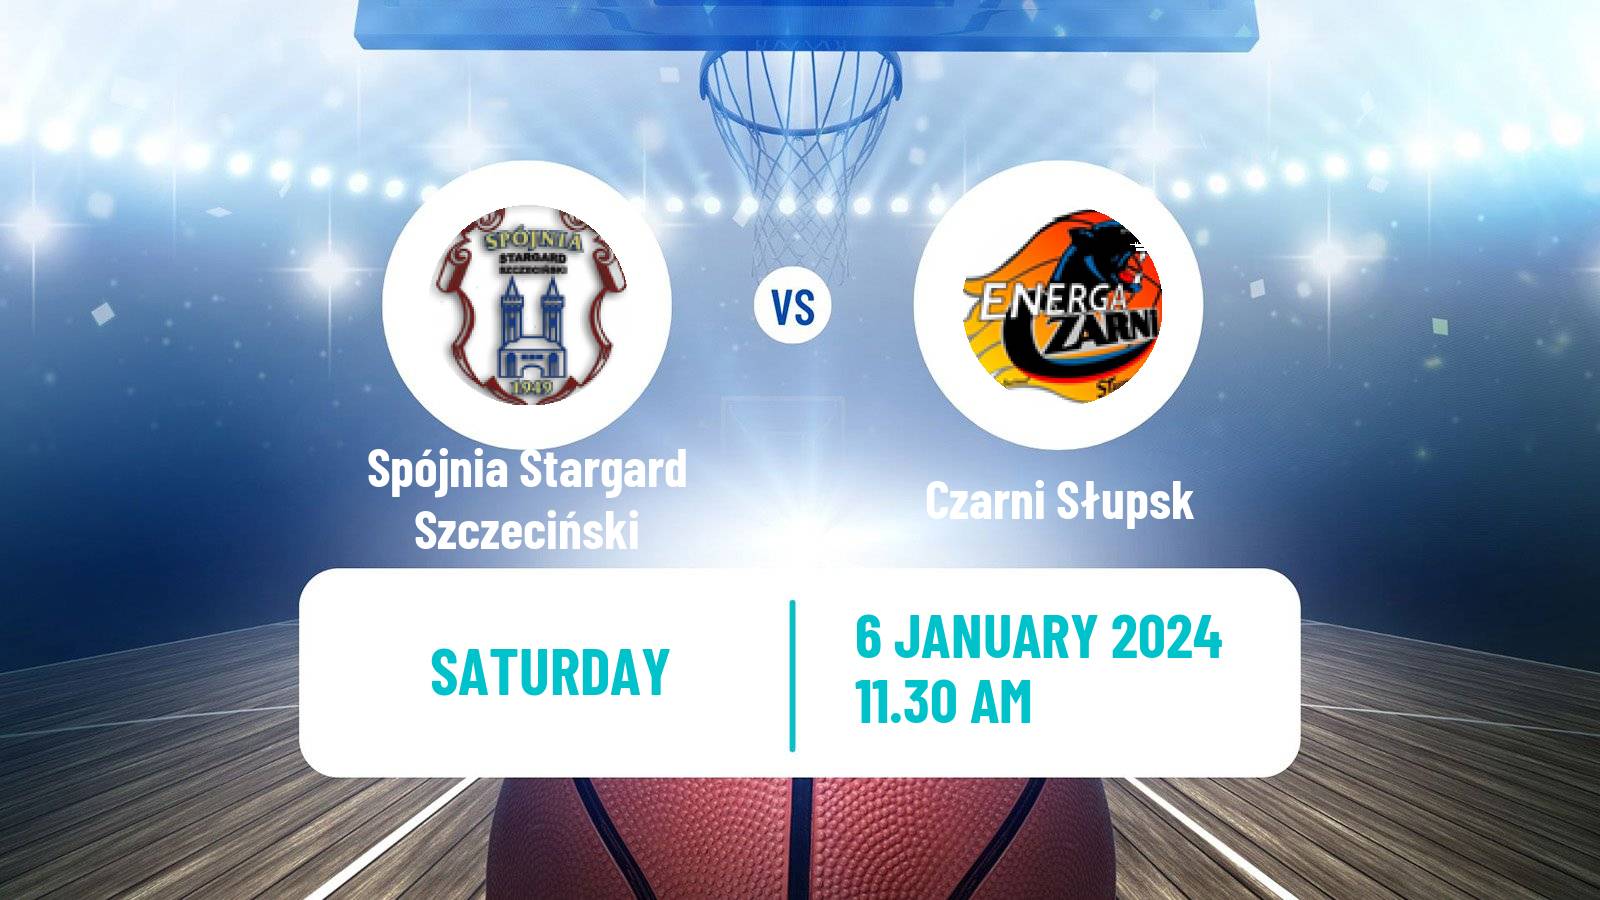 Basketball Polish Basket Liga Spójnia Stargard Szczeciński - Czarni Słupsk